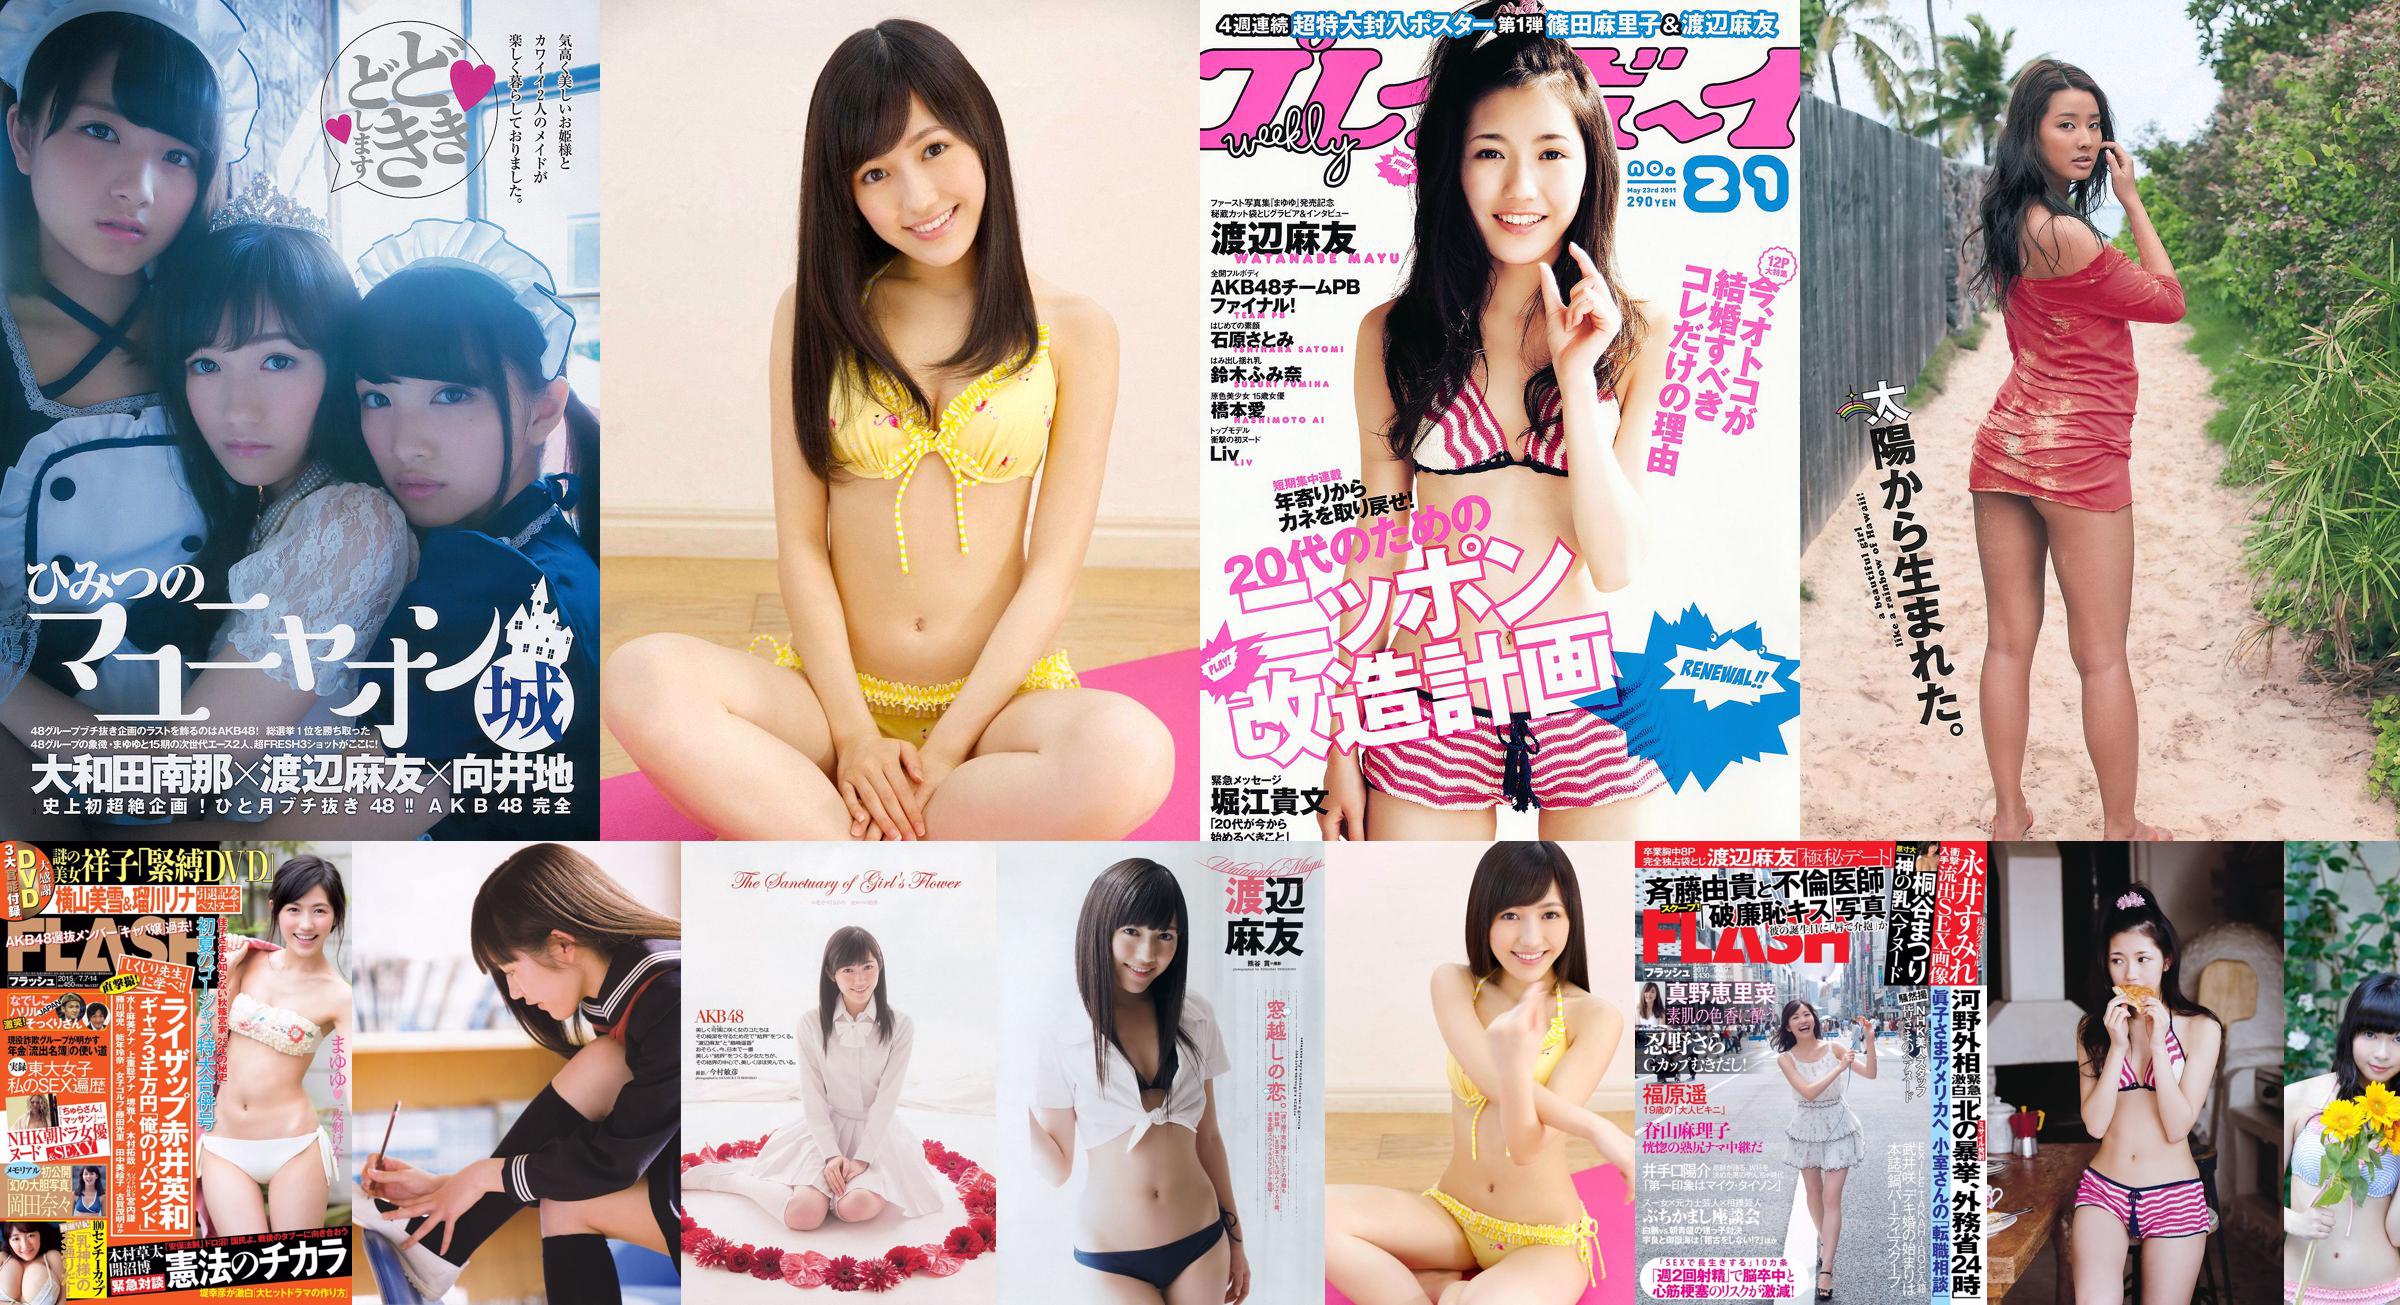 Mayu Watanabe Haruka Shimazaki Ruriko Kojima Riho Iida Naabo Tofu @ Nana [Playboy hebdomadaire] 2013 No.09 Photo Toshi No.fbc3dd Page 1